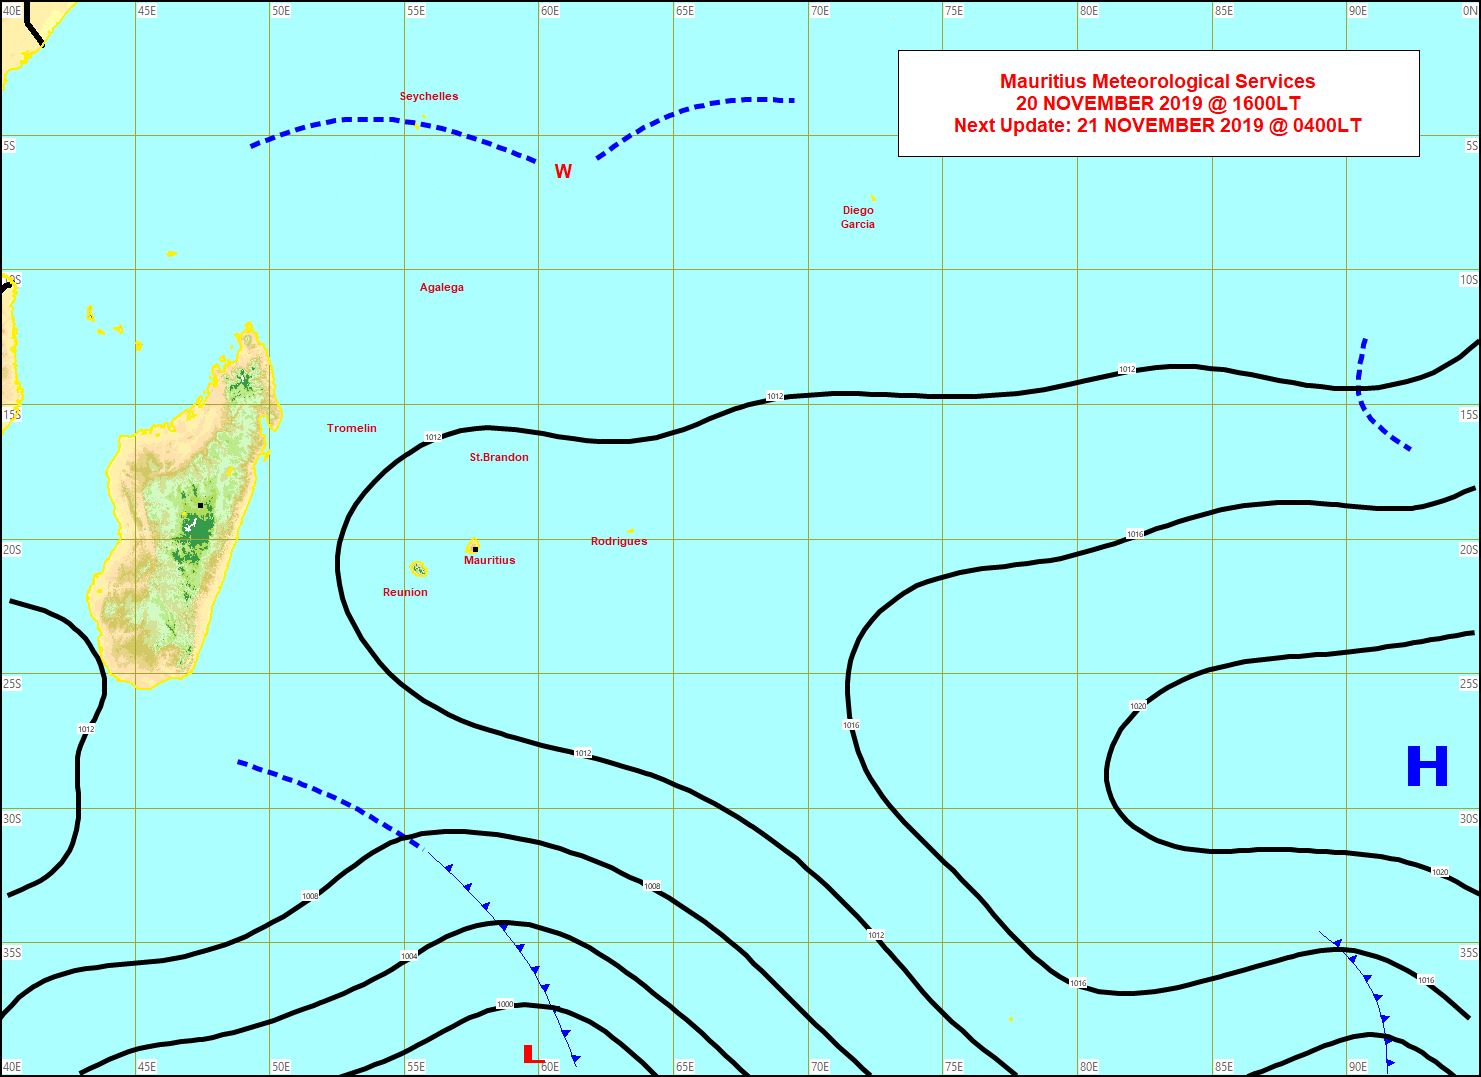 Le vent reste faible sur la Réunion et Maurice. Les températures diurnes restent sensiblement supérieures aux normales. MMS